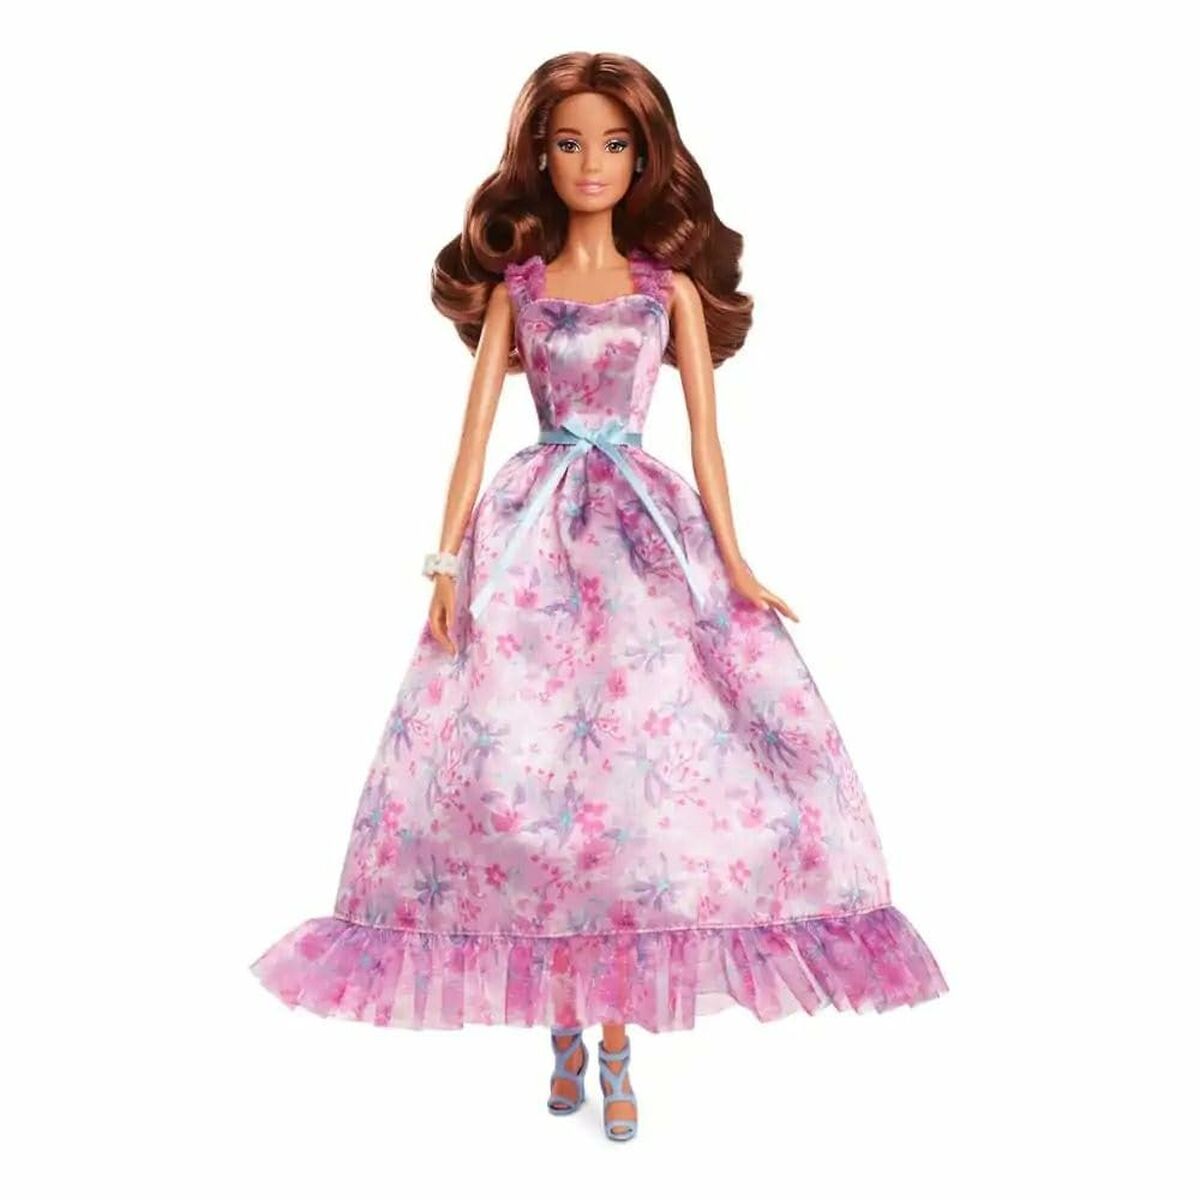 Osta tuote Nukke Barbie Birthday Wishes verkkokaupastamme Korhone: Lelut & Asut 20% alennuksella koodilla VIIKONLOPPU